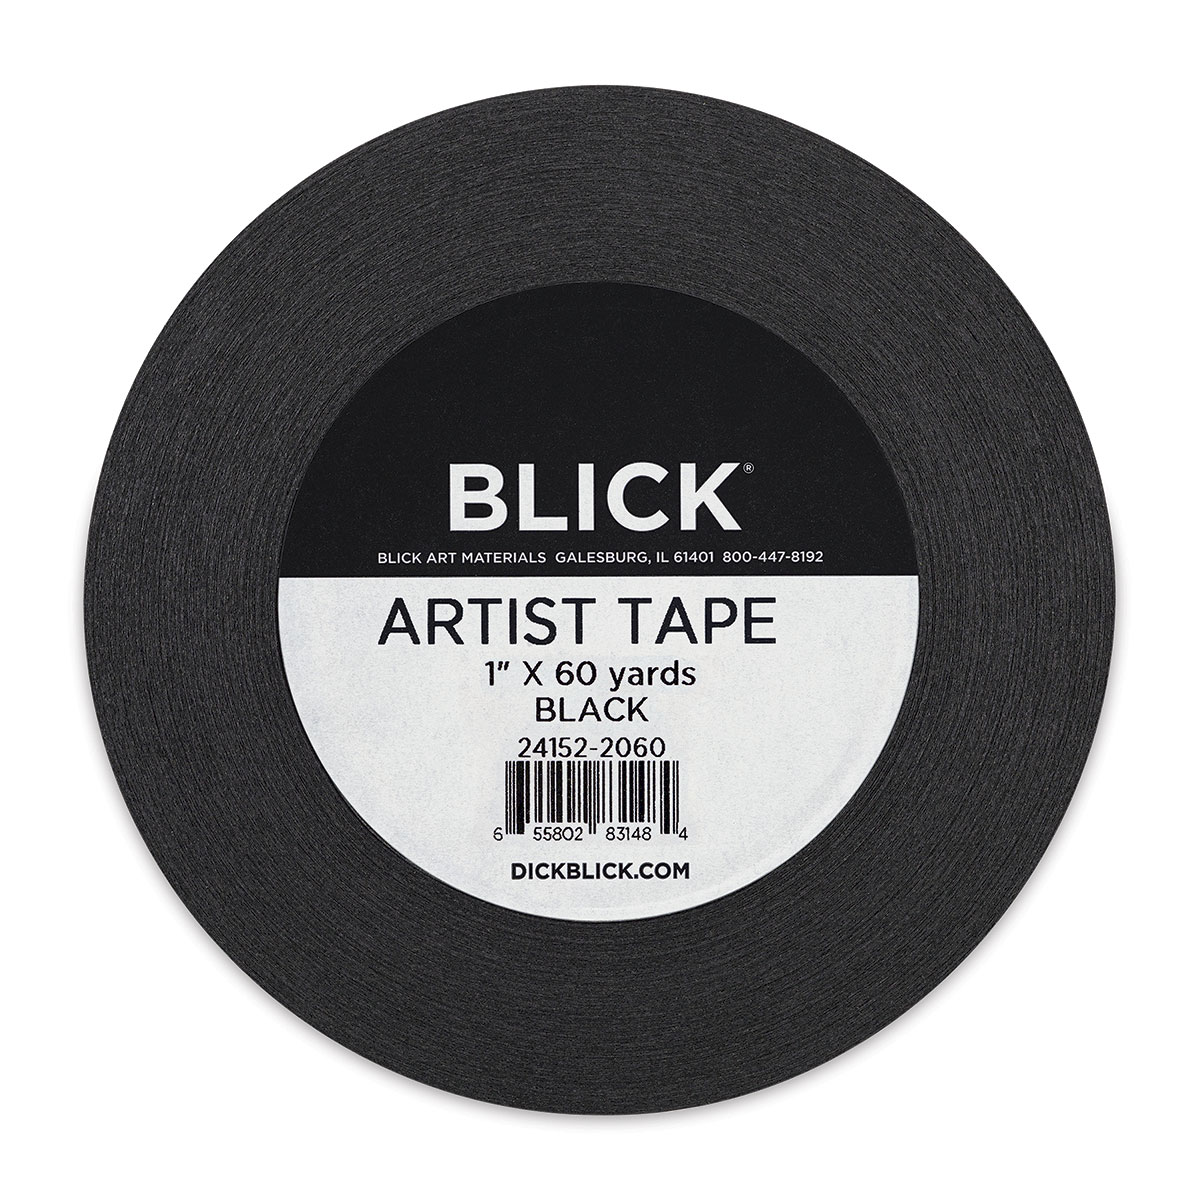 Blick Artist Tape - Black, 1 x 60 yds